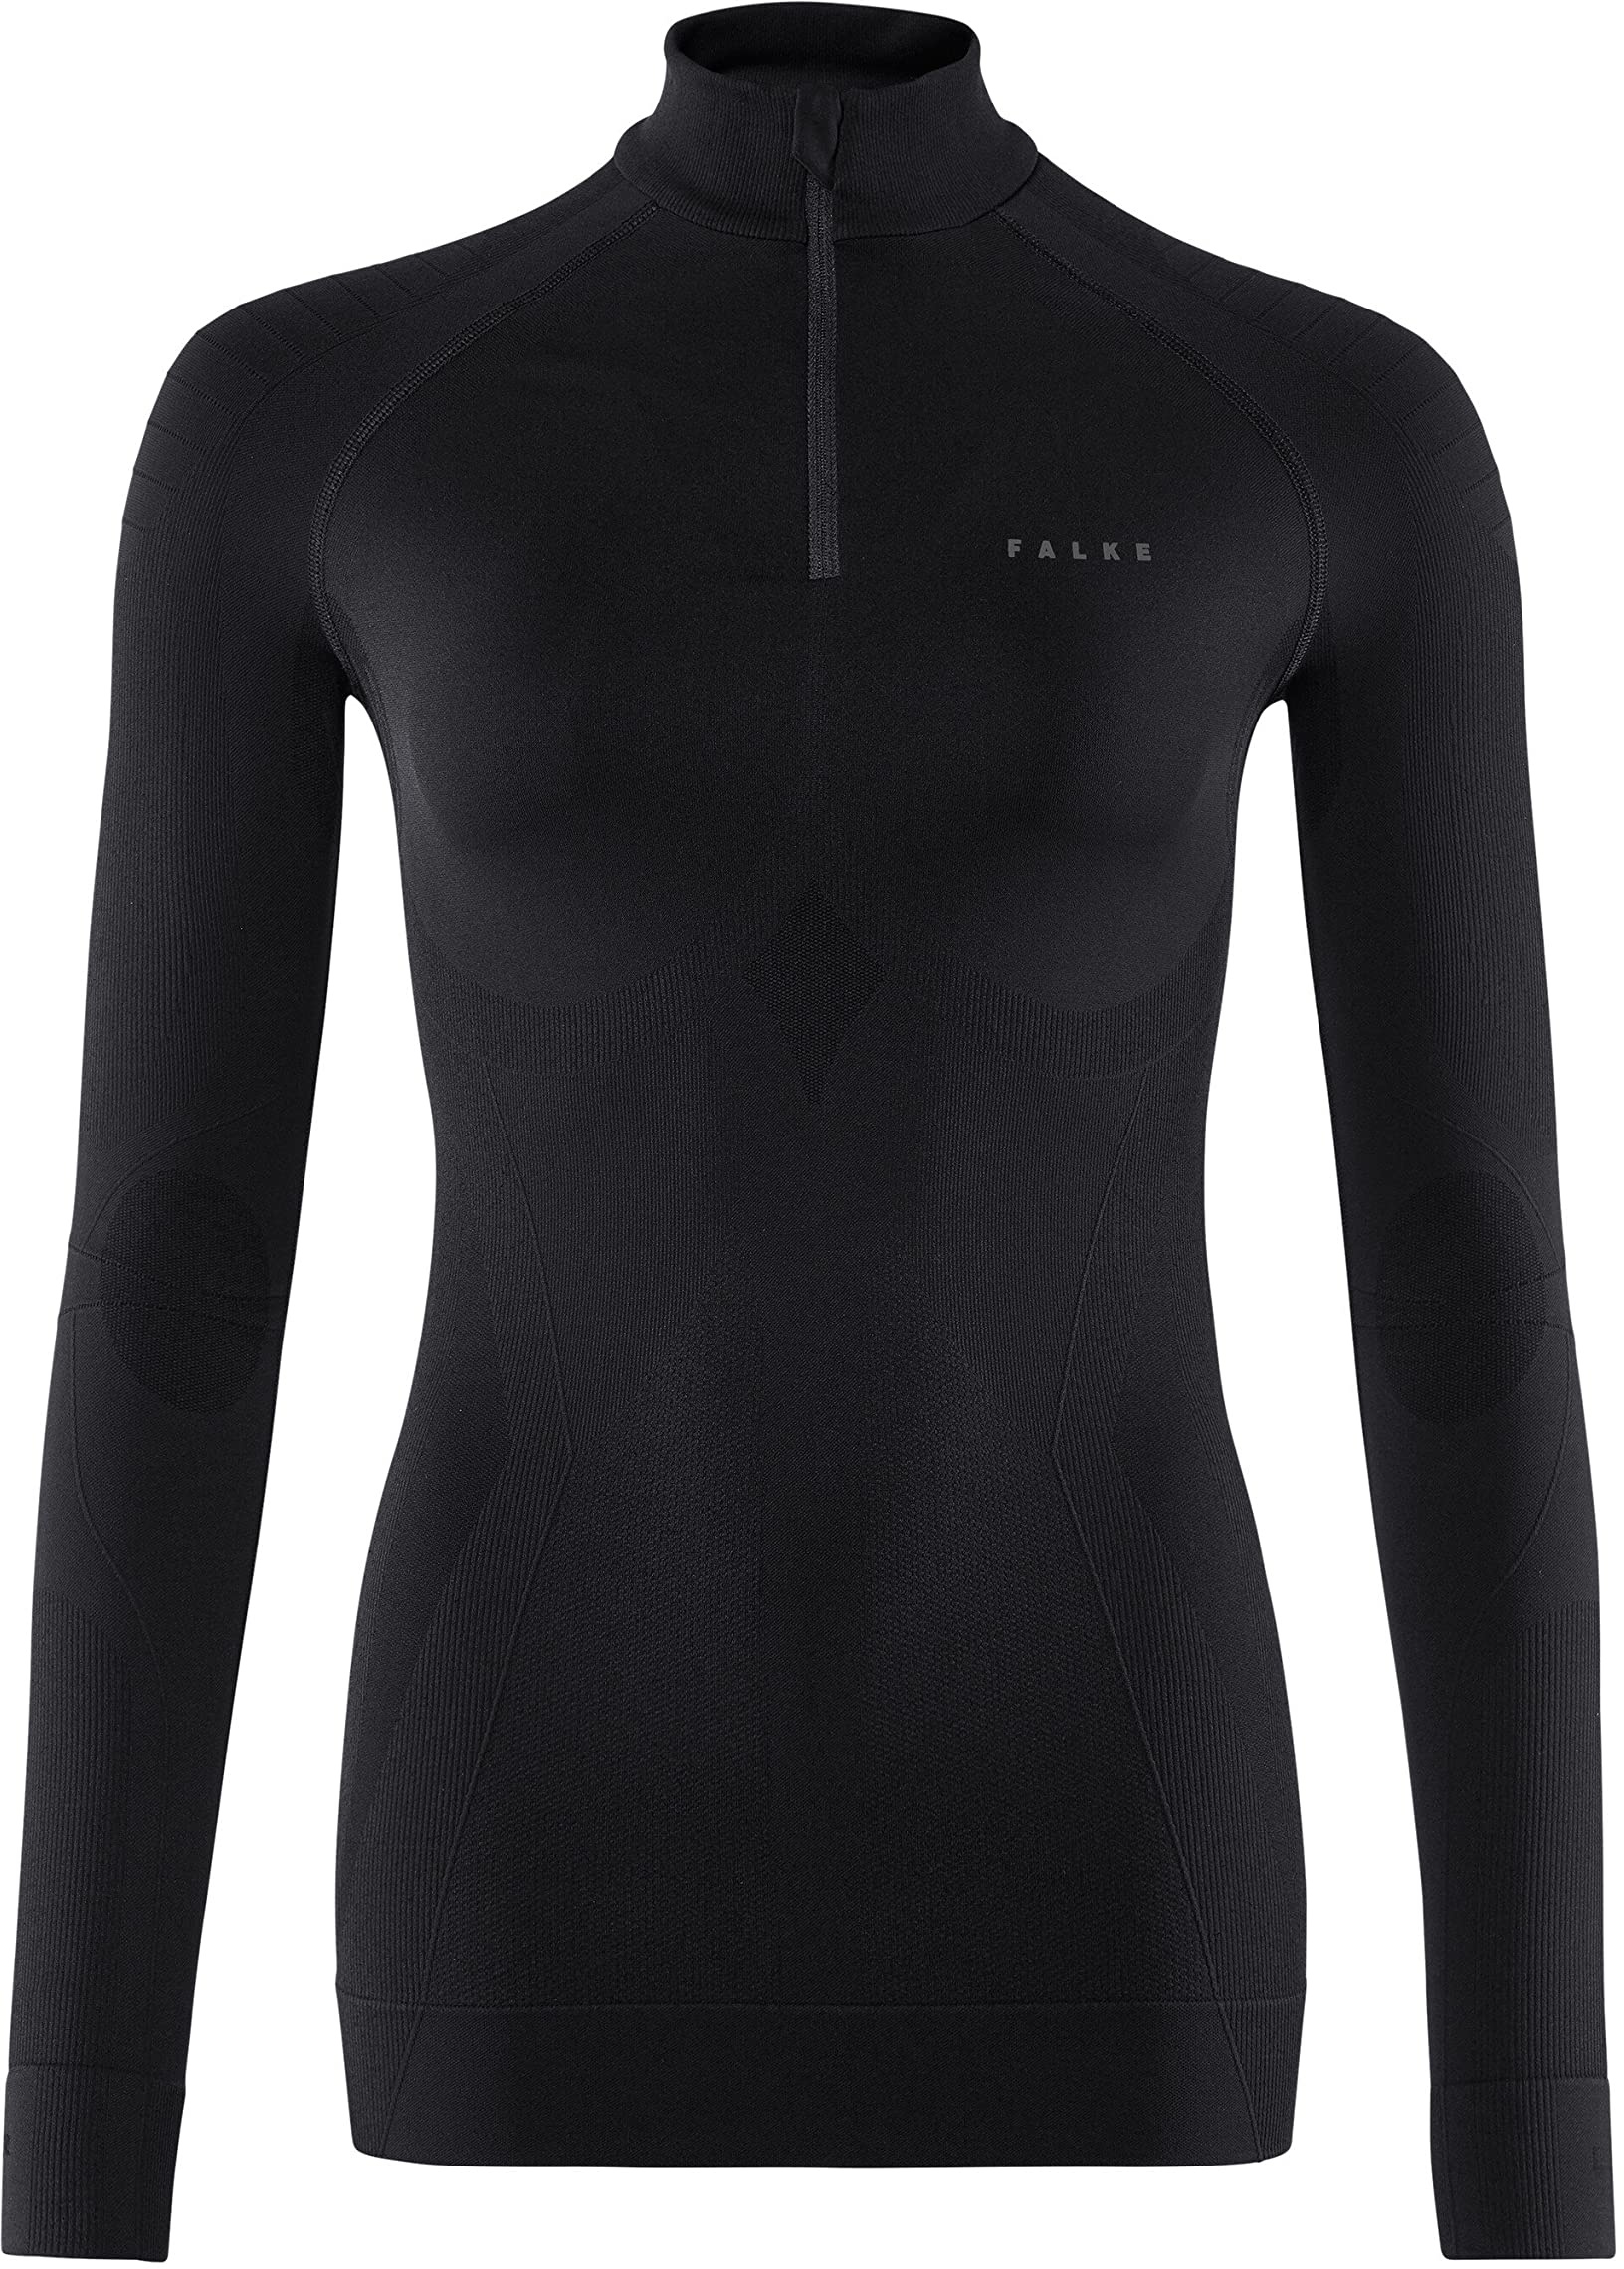 FALKE Damen Maximale warme rits W L/S Baselayer Shirt, Schwarz (Black 3000), L EU